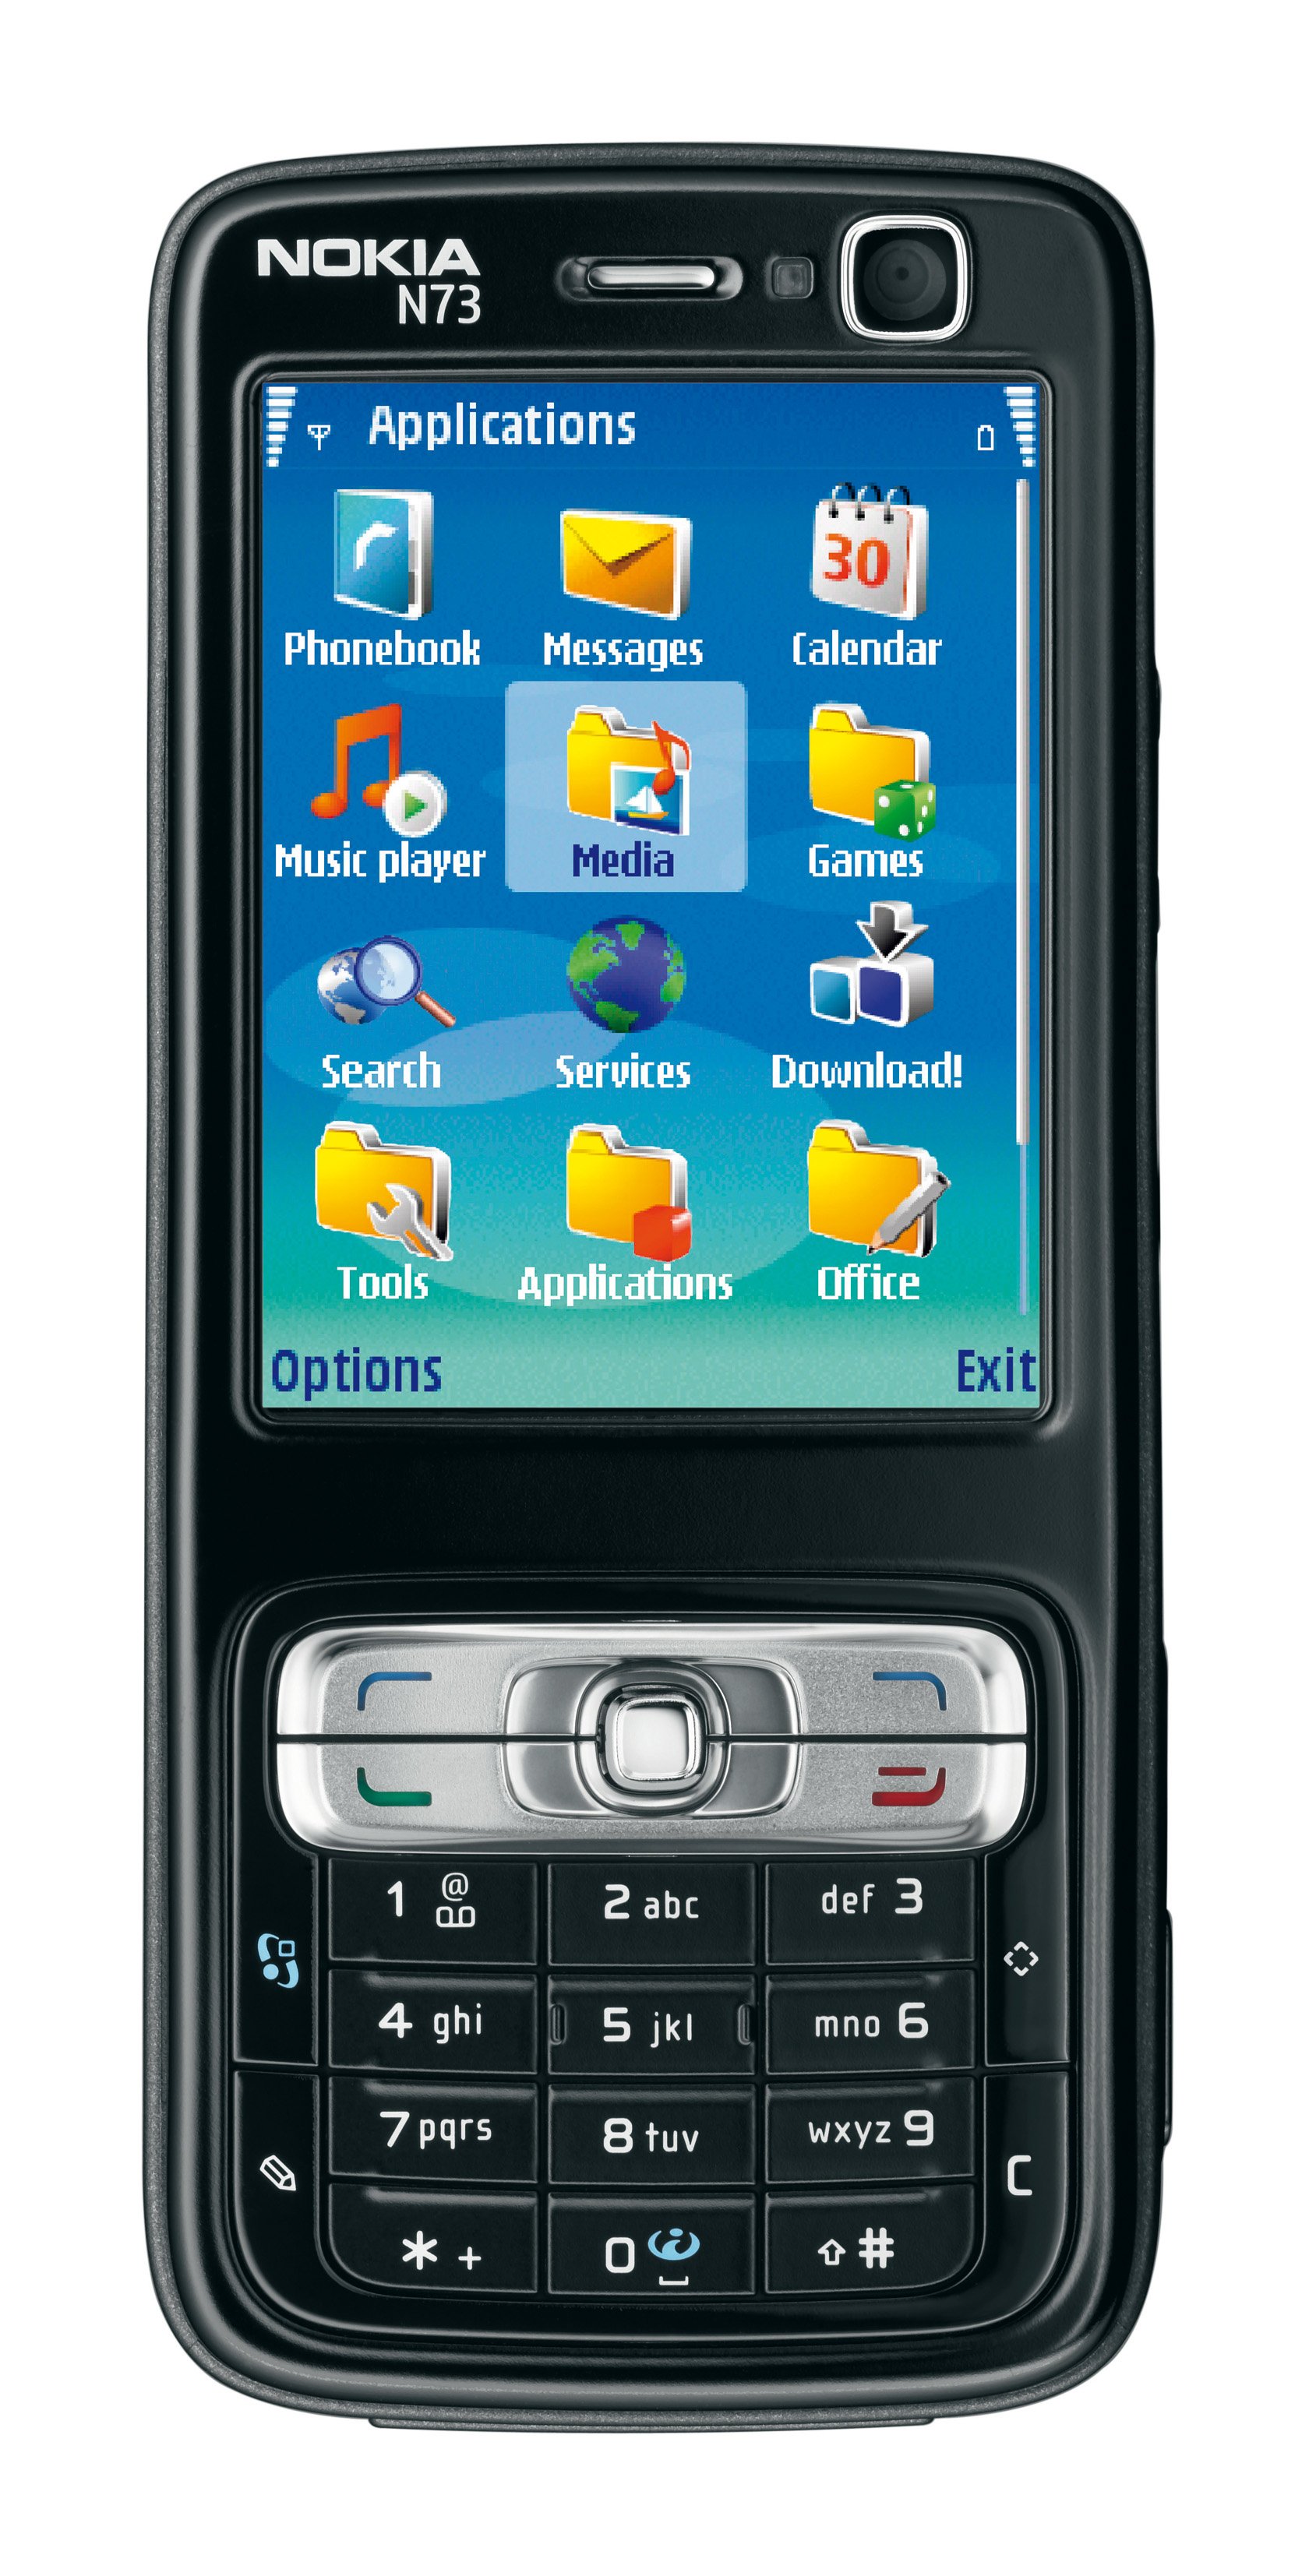 Nokia N73 technische daten test review vergleich 